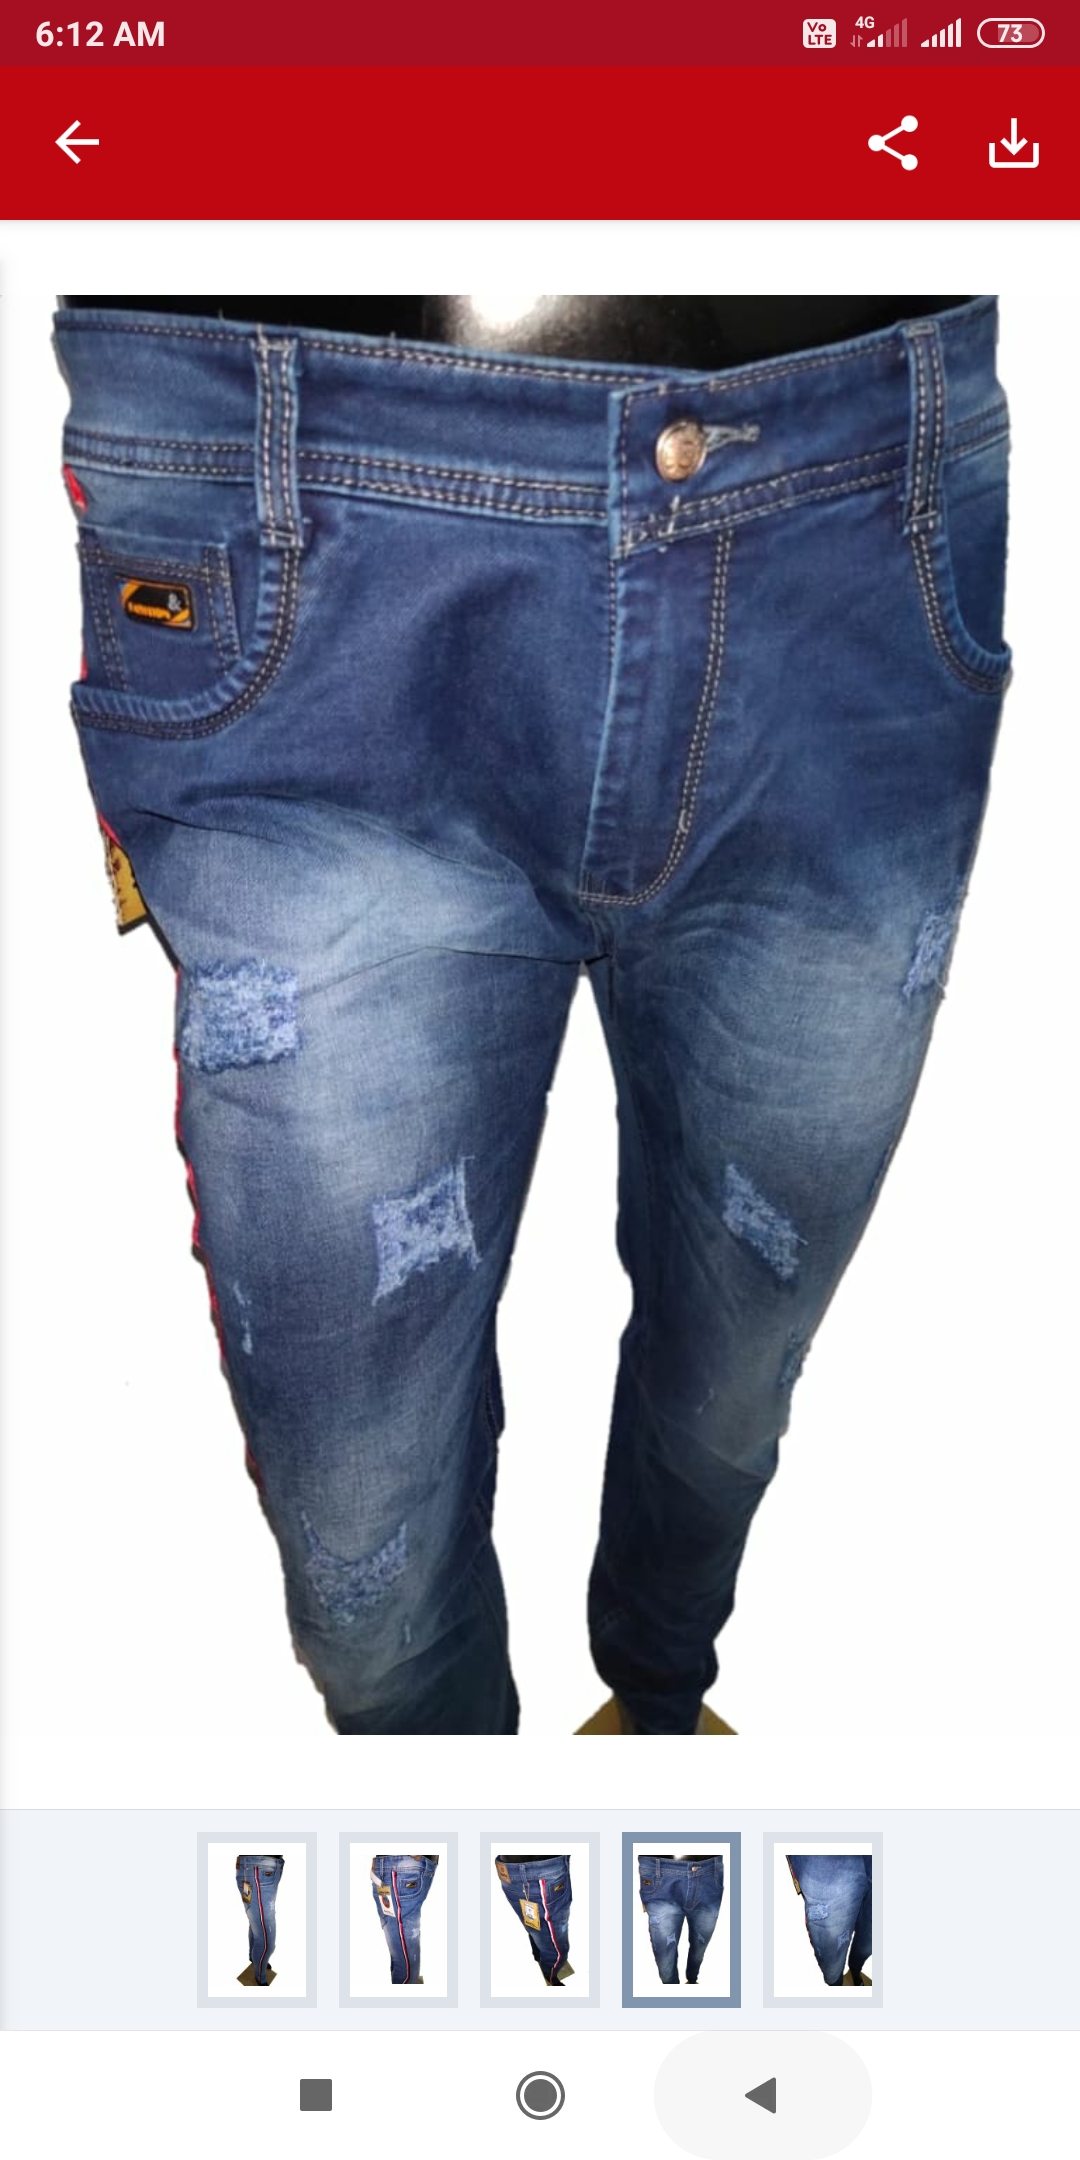 sparky jeans damage